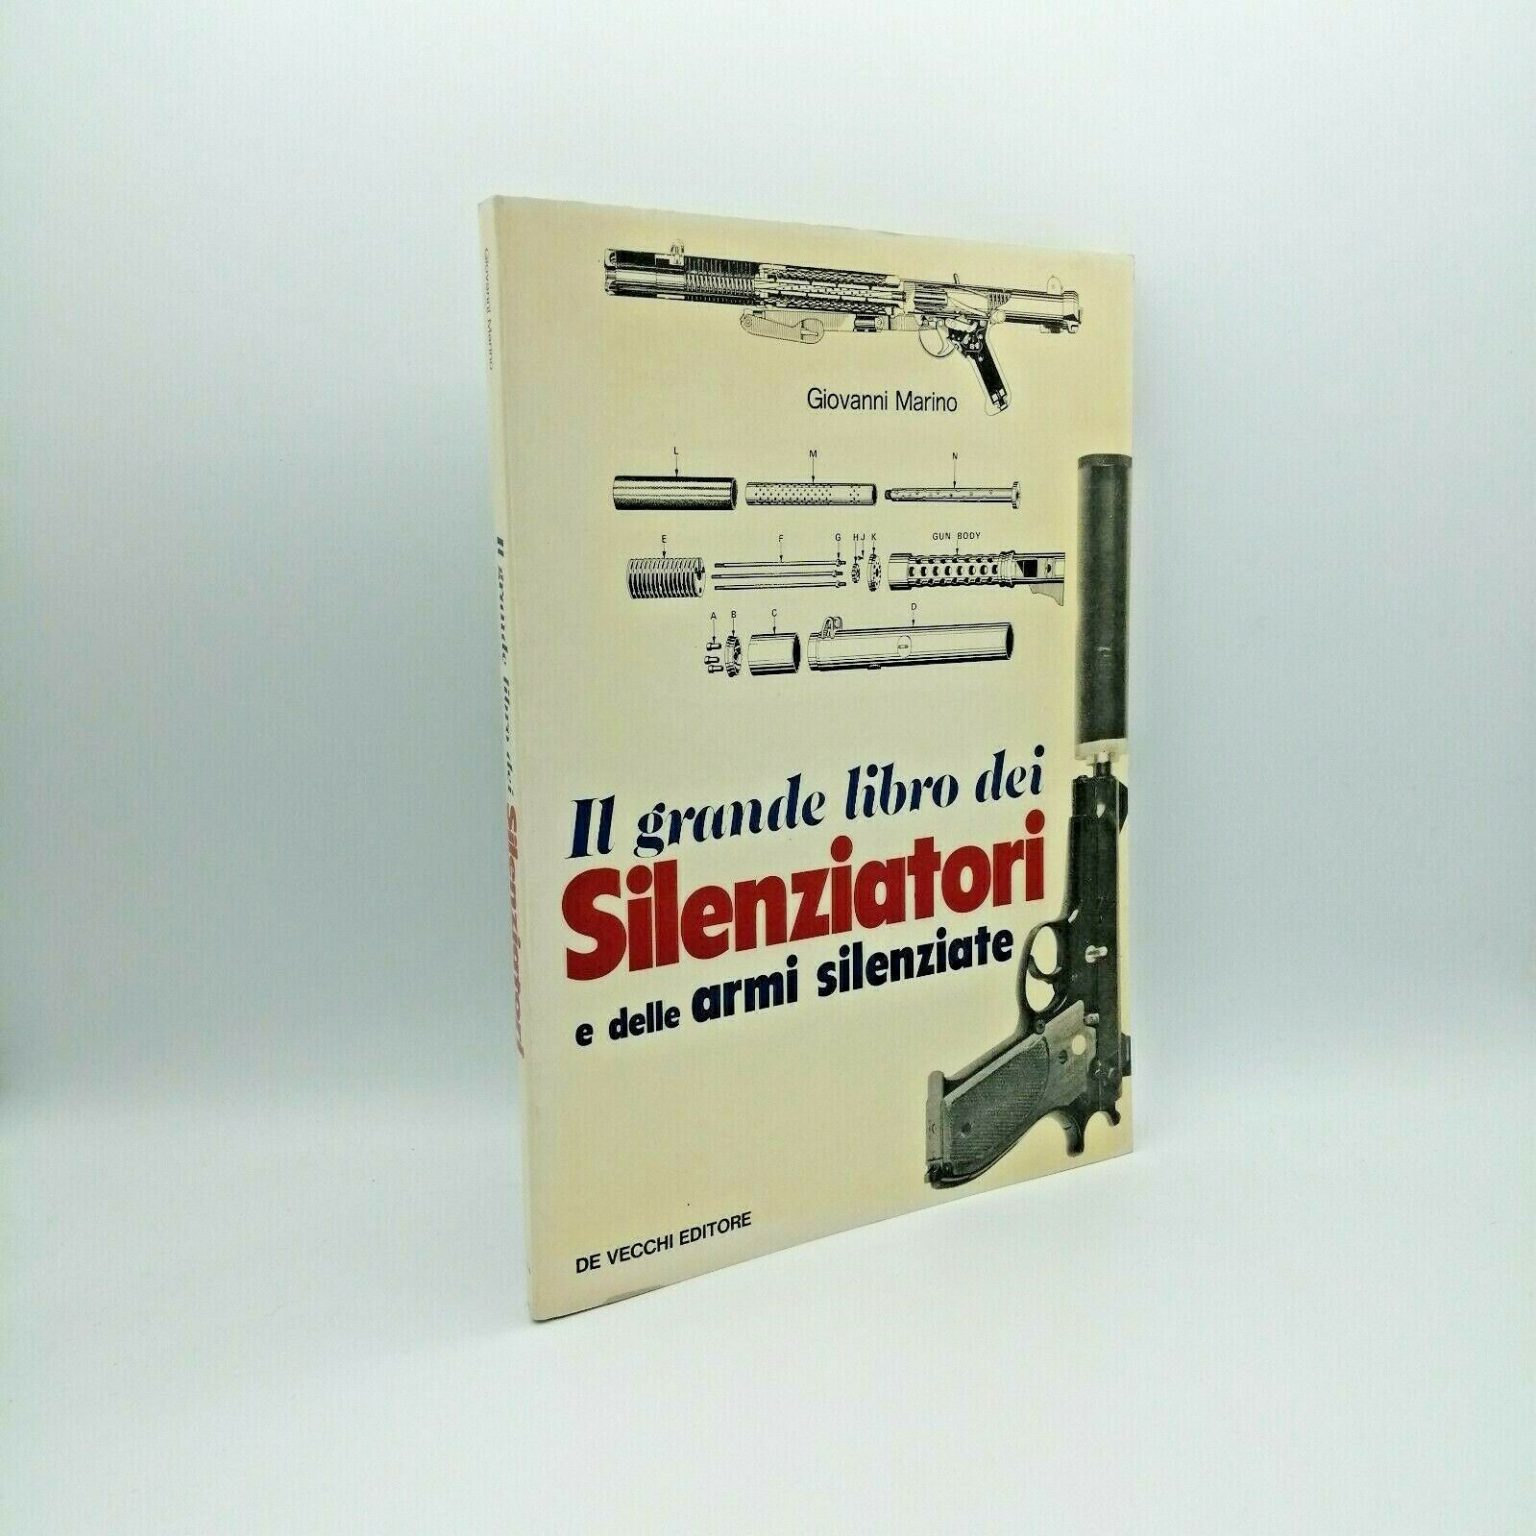 “IL GRANDE LIBRO DEI SILENZIATORI e delle armi silenziate” Marino, De Vecchi 1985 Ars Librorum